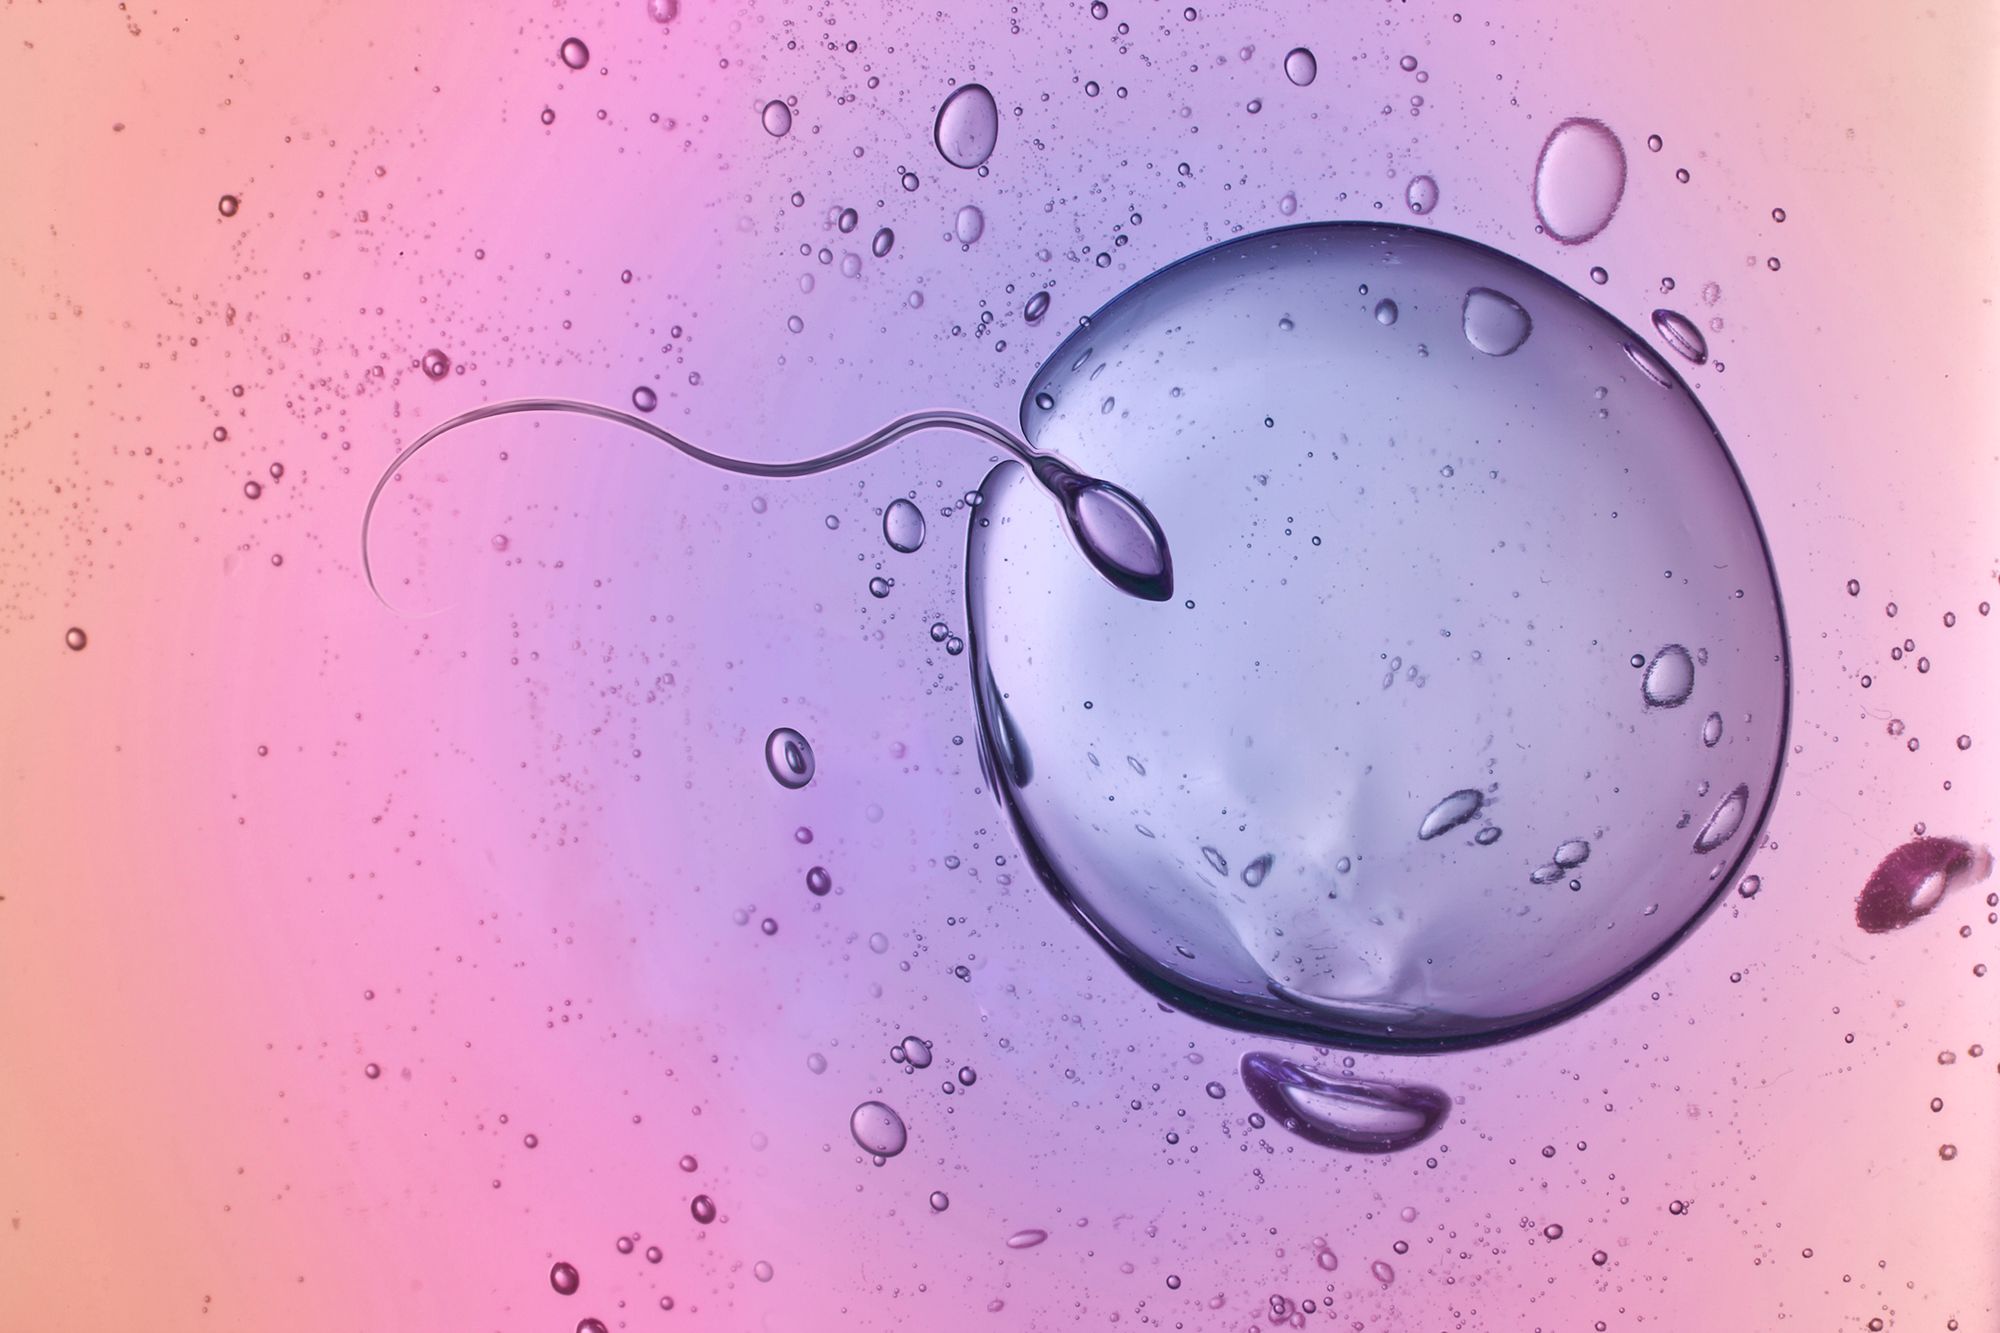 Das Bild zeigt eine mikroskopische Aufnahme, auf der zu sehen ist, wie ein Spermium eine Eizelle befruchtet.